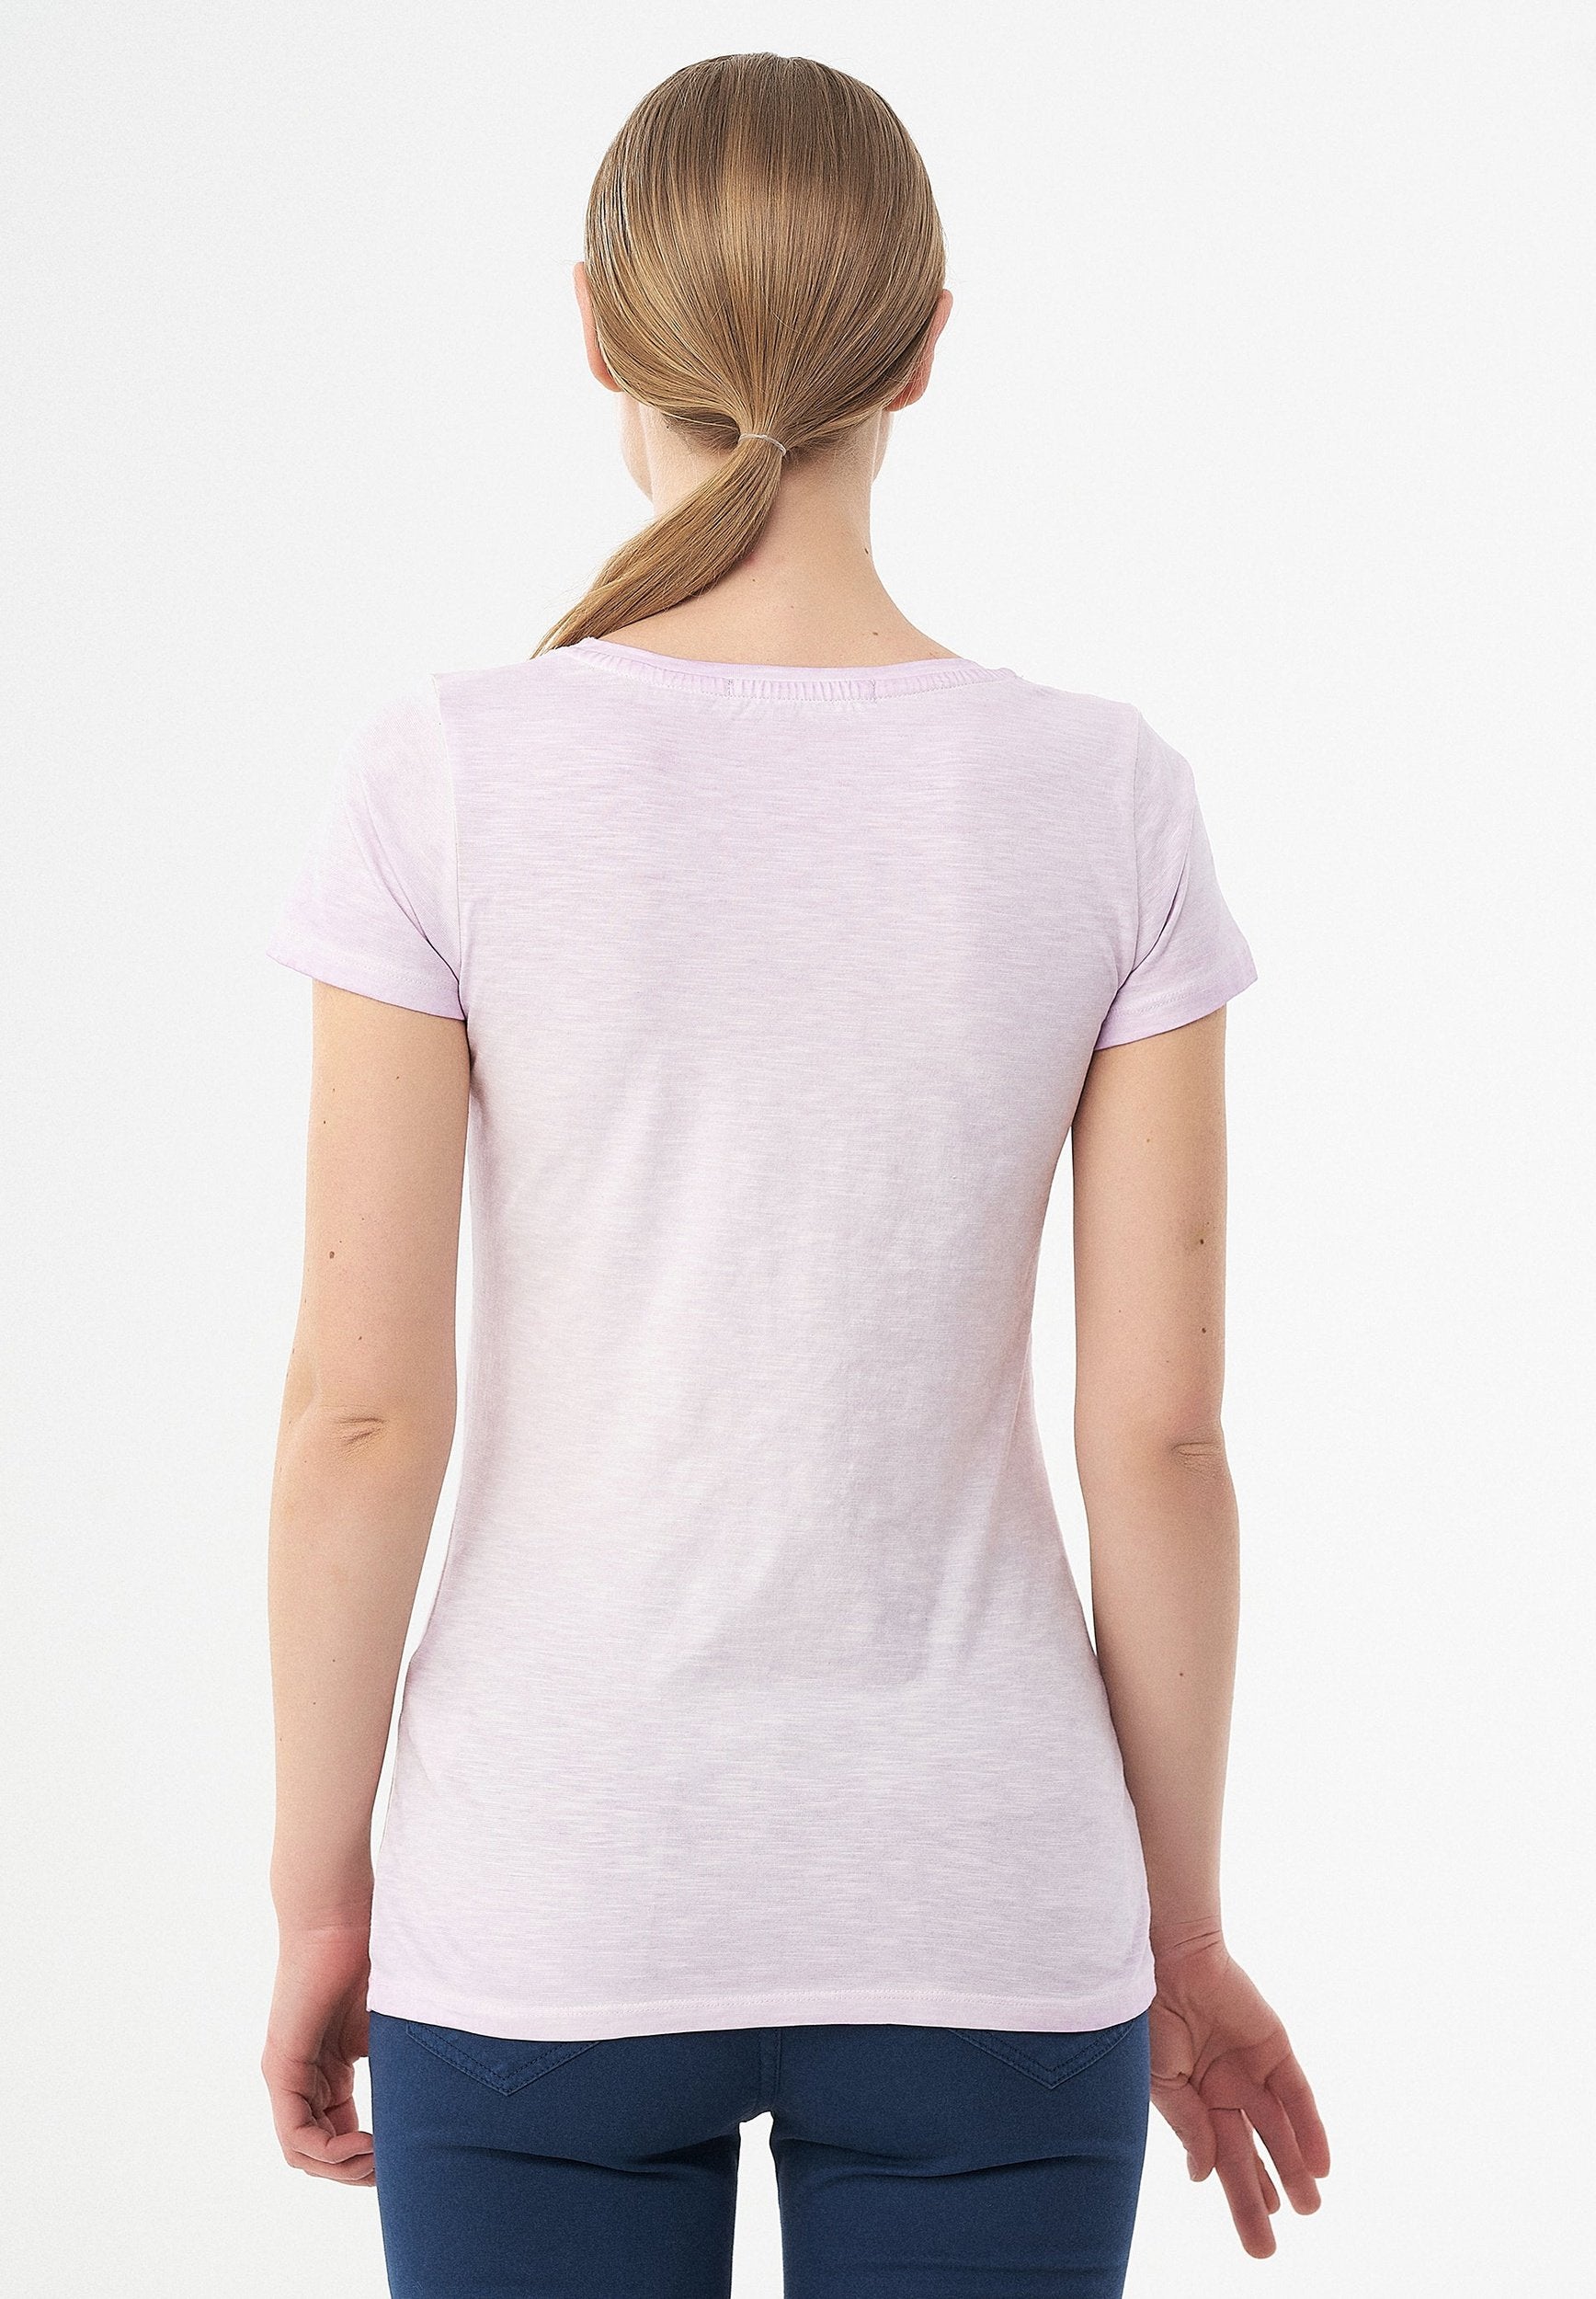 Garment Dyed T-Shirt aus Bio-Baumwolle mit Libellen-Print